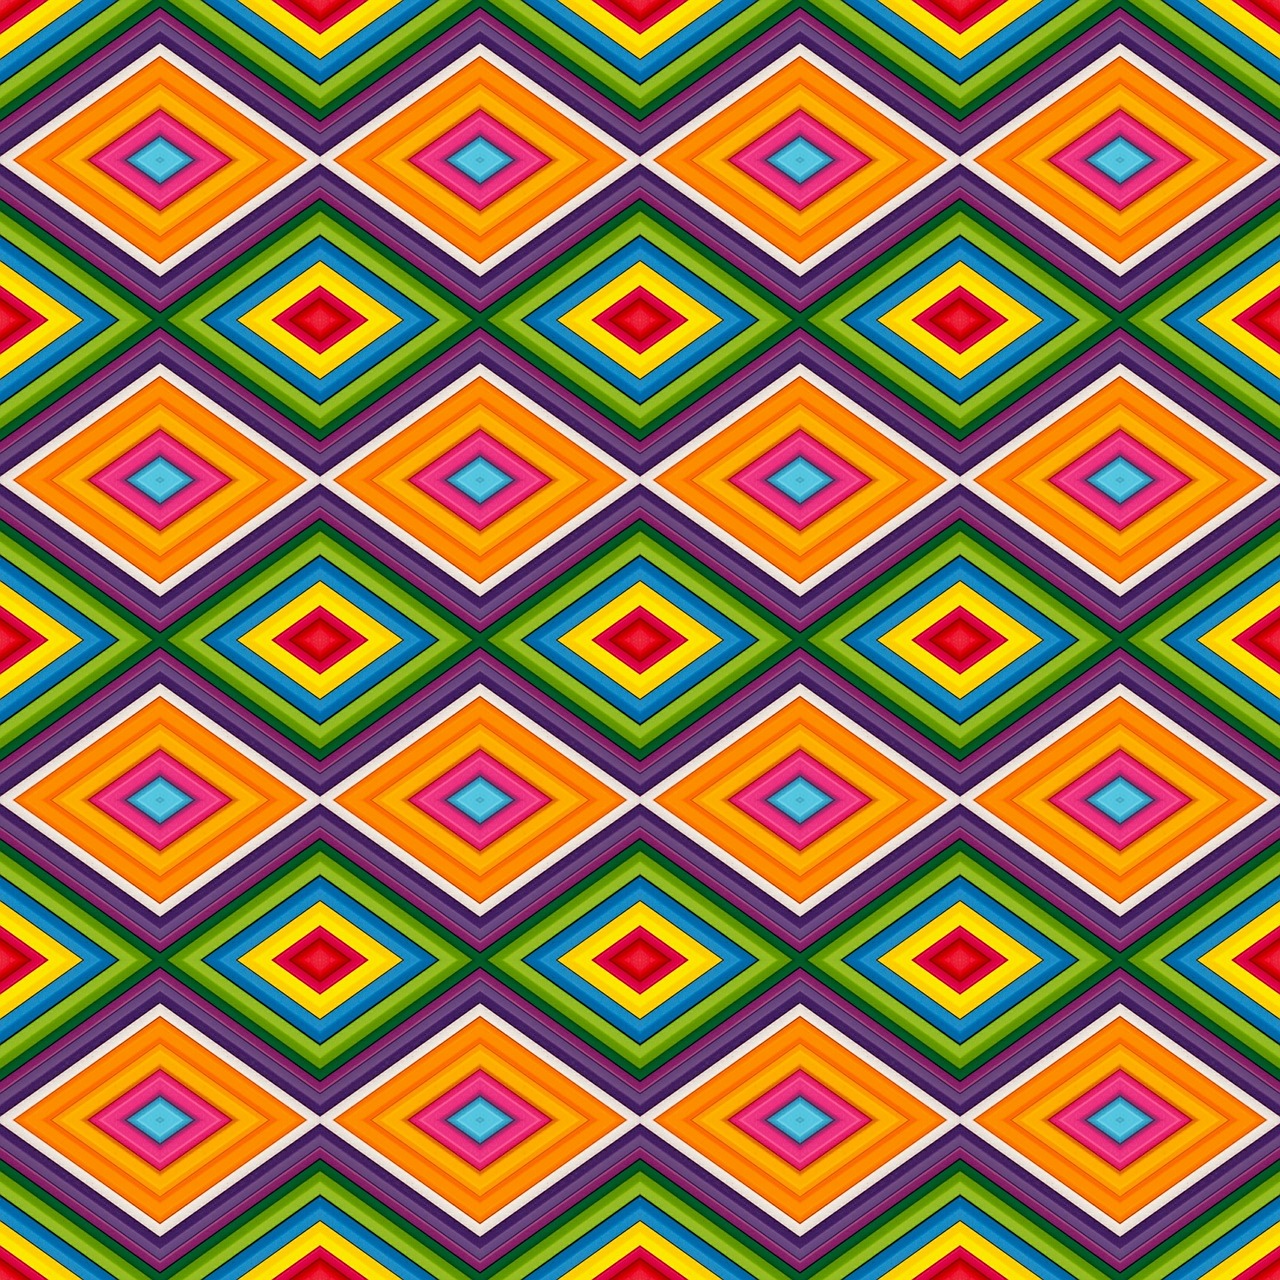 symmetrical pattern design free photo